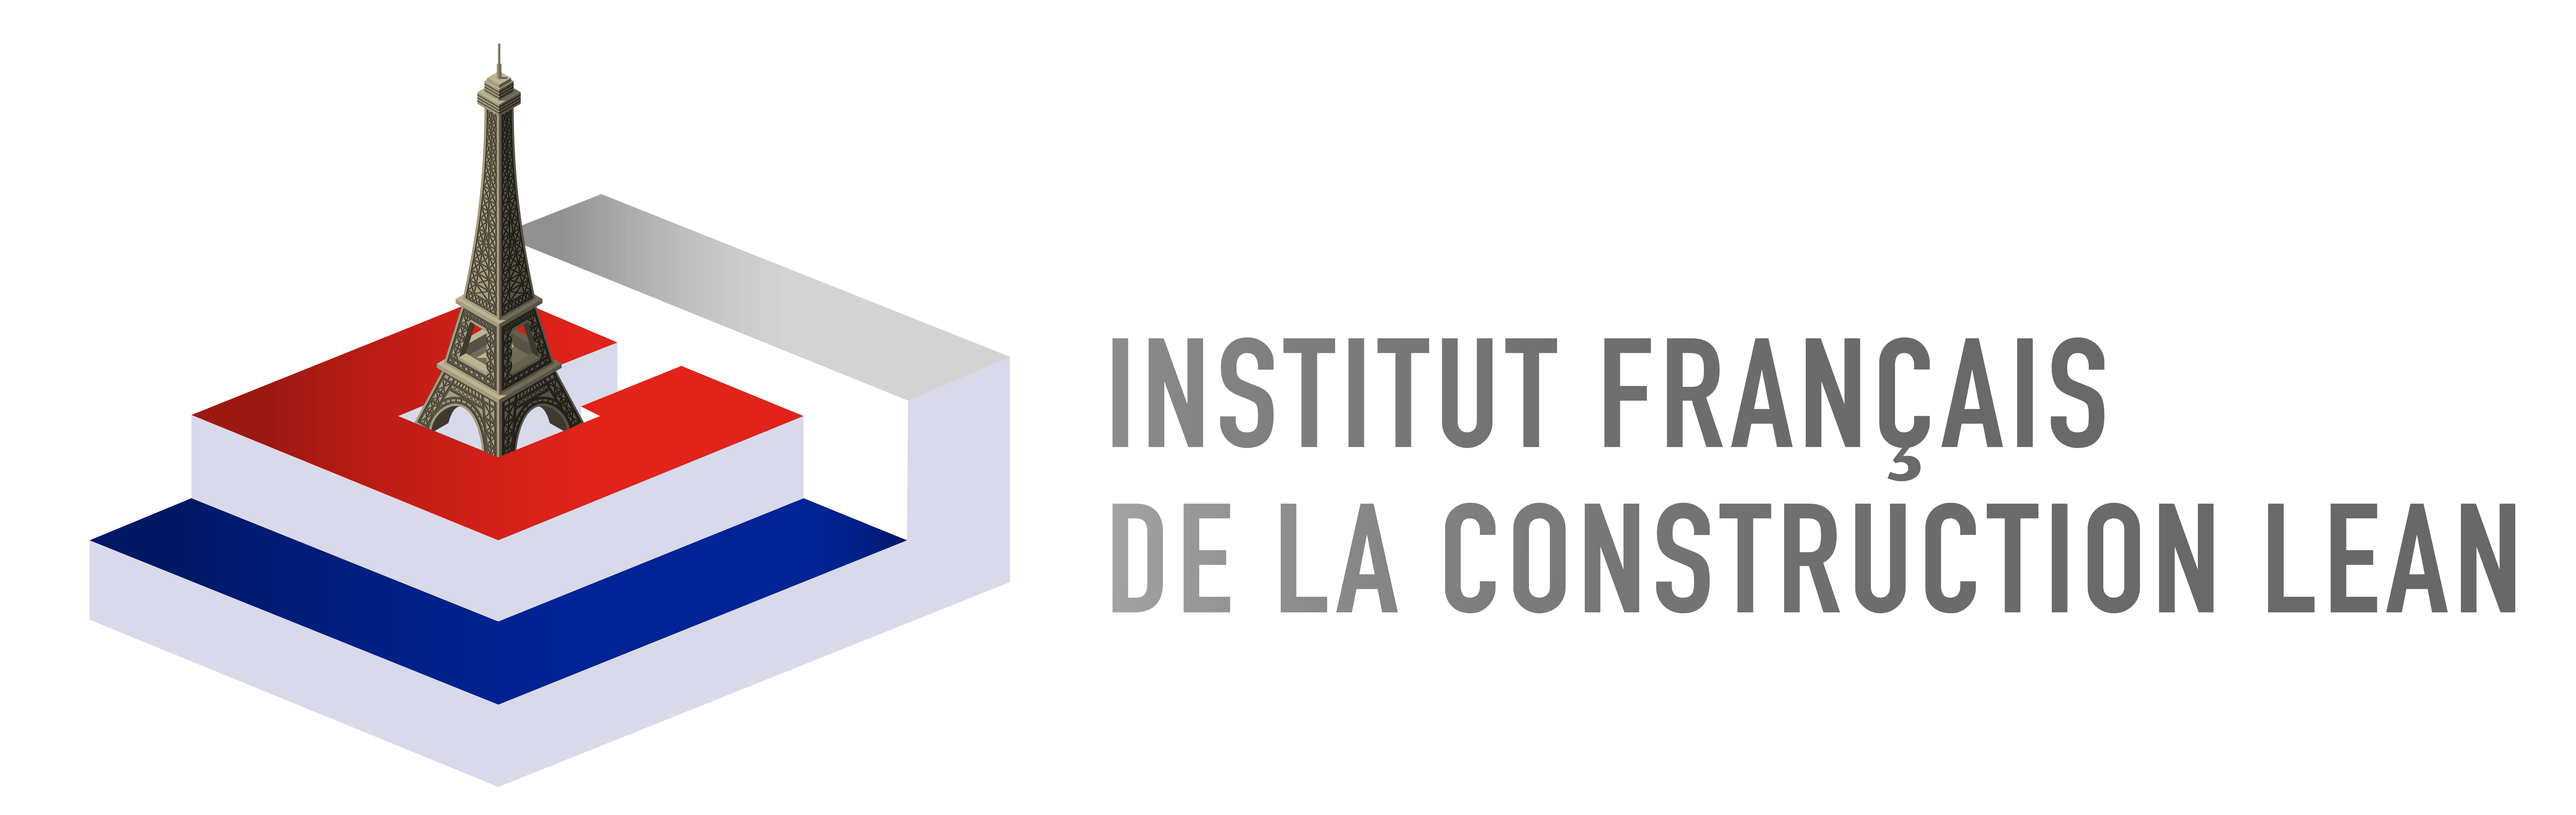 Institut Français de la Construction Lean